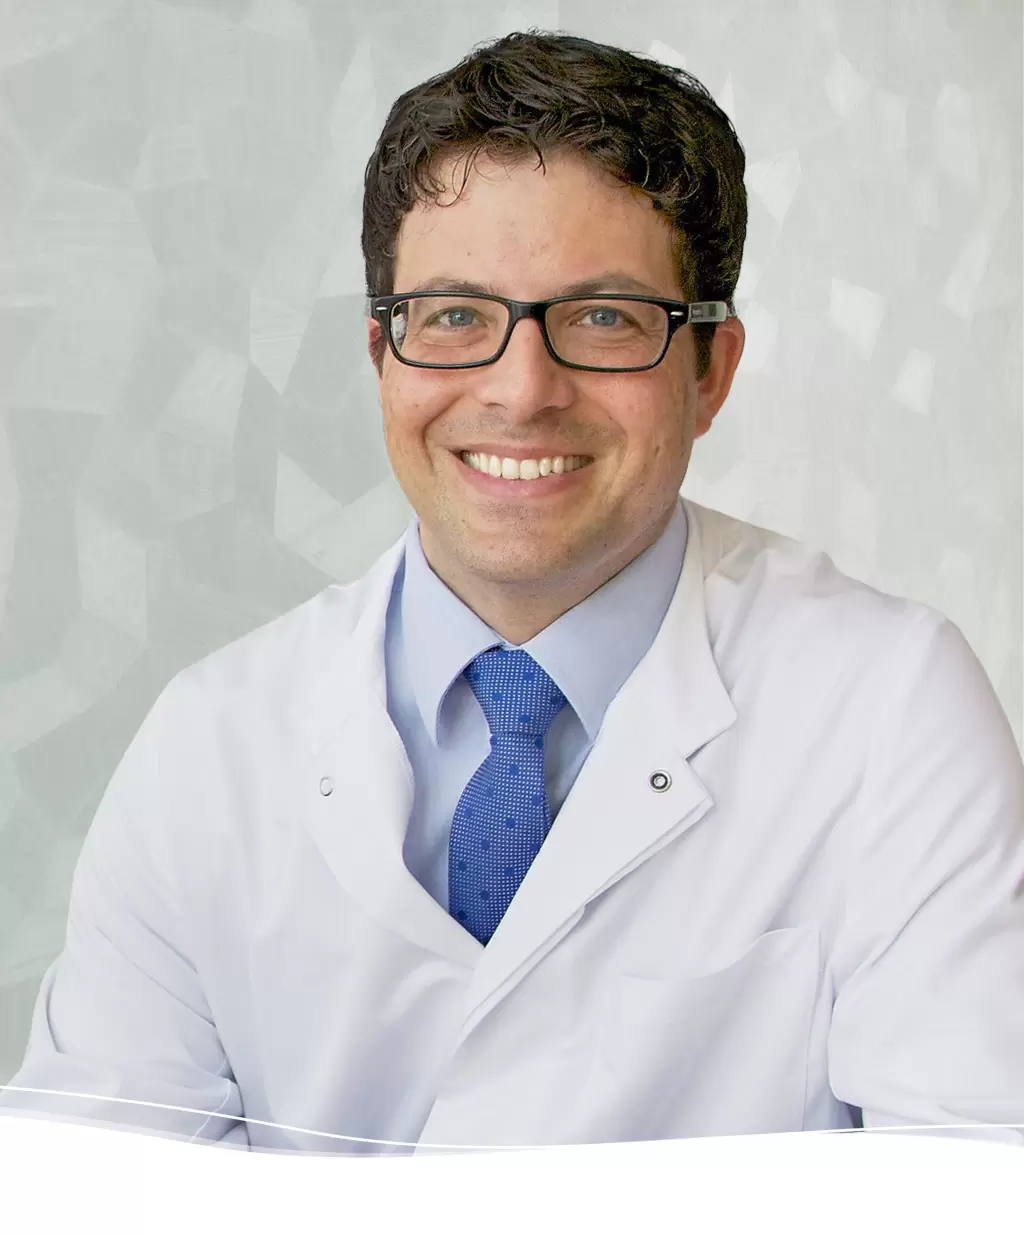 Dr. med. Christoph Cantieni, Belegarzt für Chirurgie und Urologie, Facharzt FMH für Chirurgie und Urologie